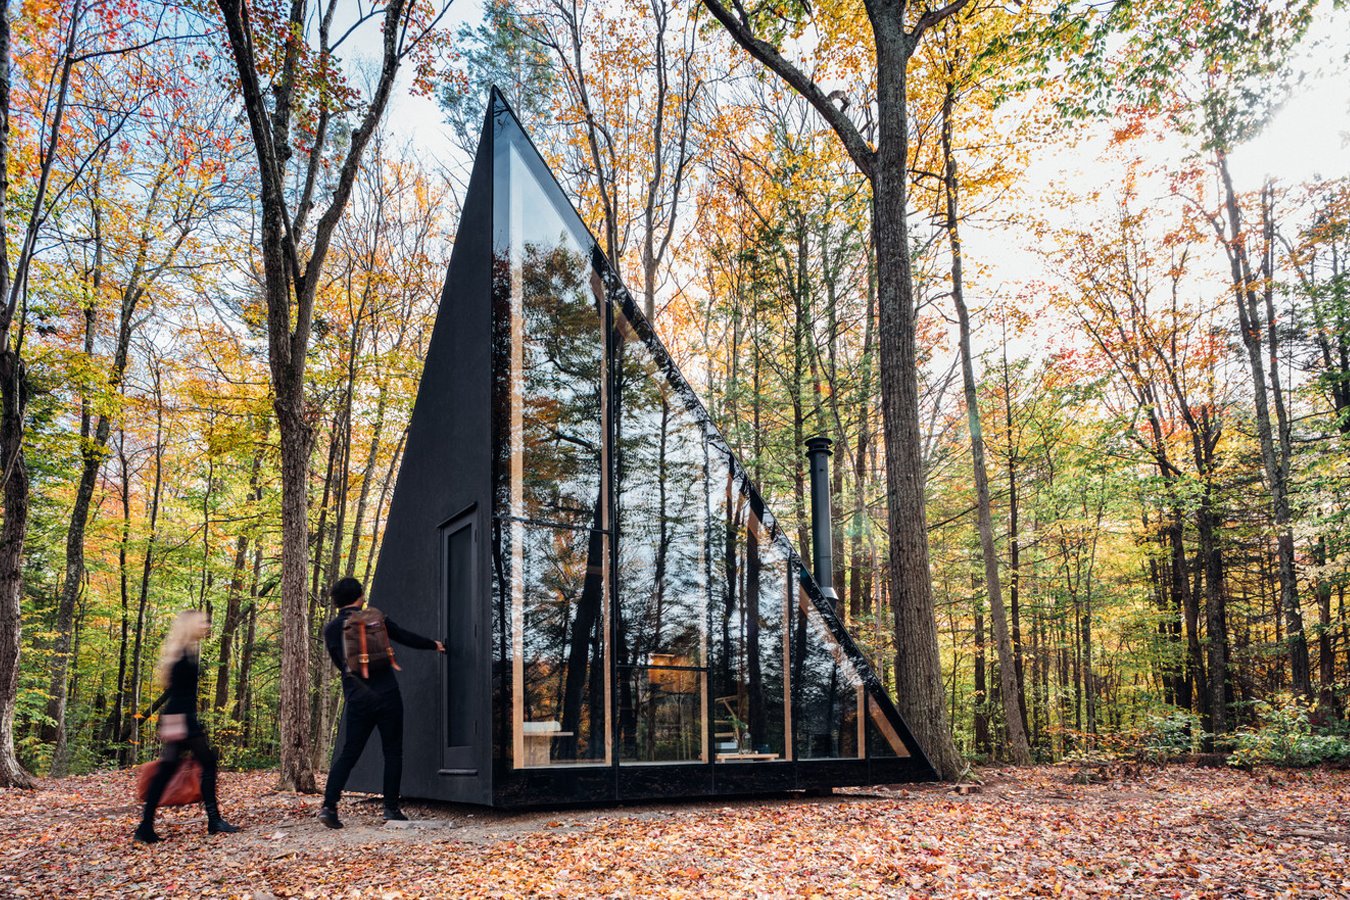 Cabaña con diseño triangular con una fachada de vidrio en medio del bosque.